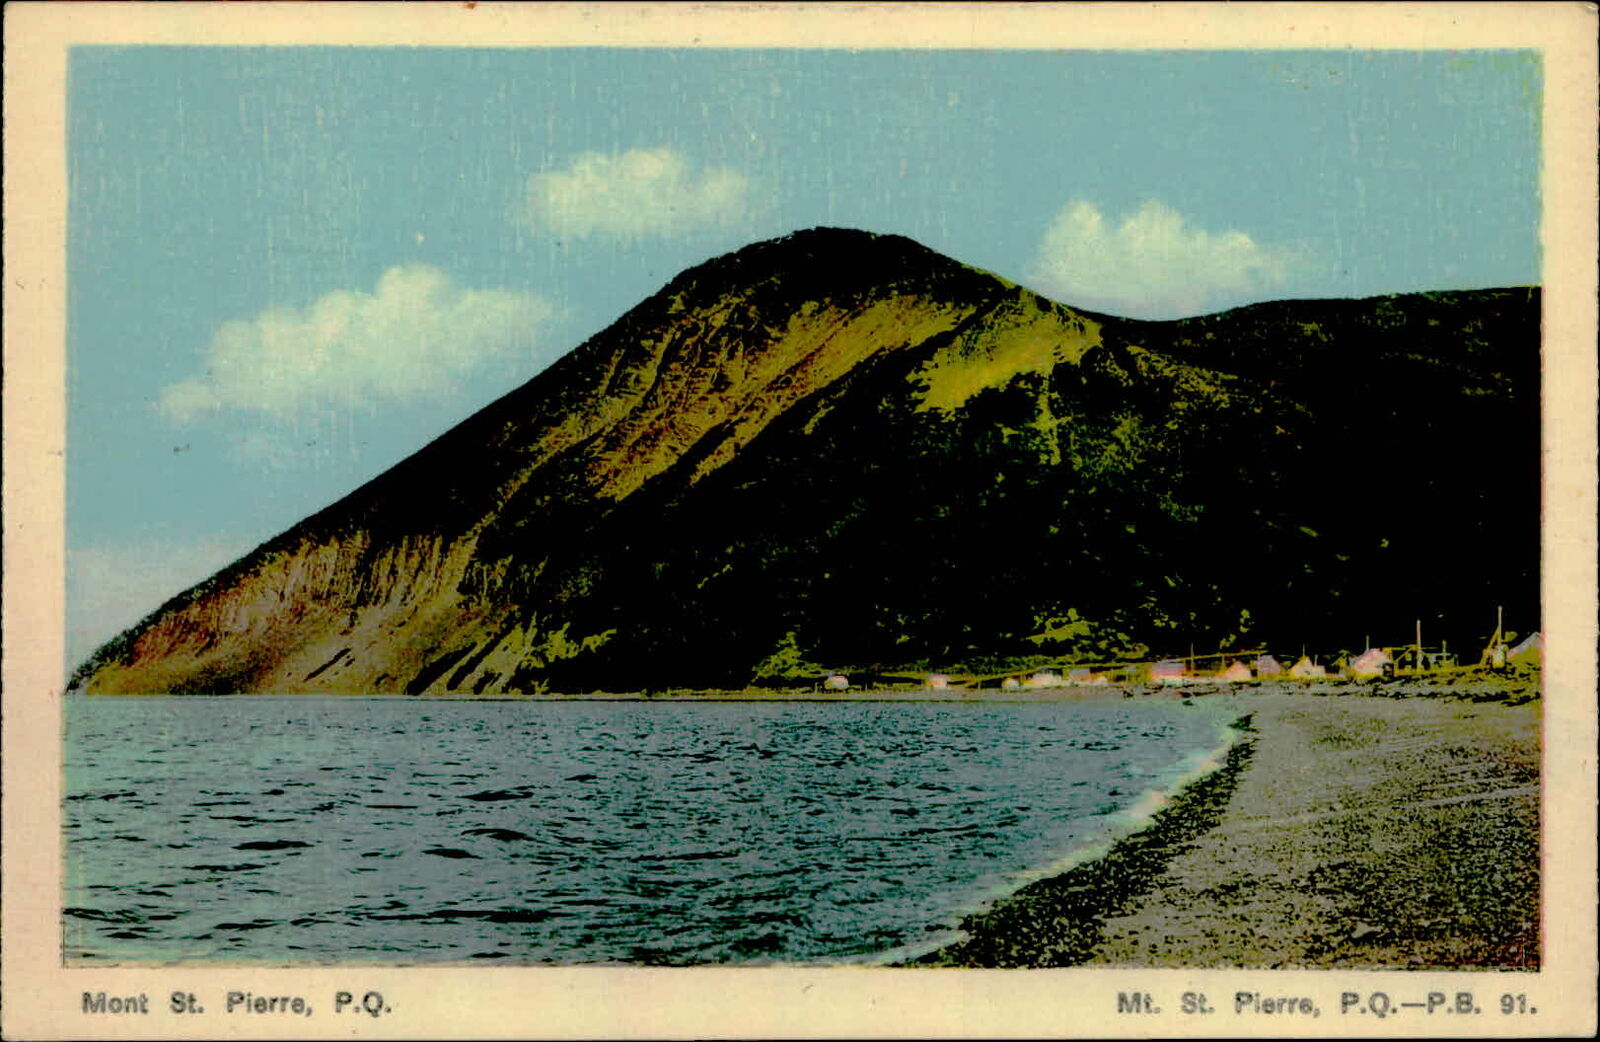 Postcard: Mont St. Pierre, P.Q. Mt. St. Pierre, P.Q.-P.B. 91.